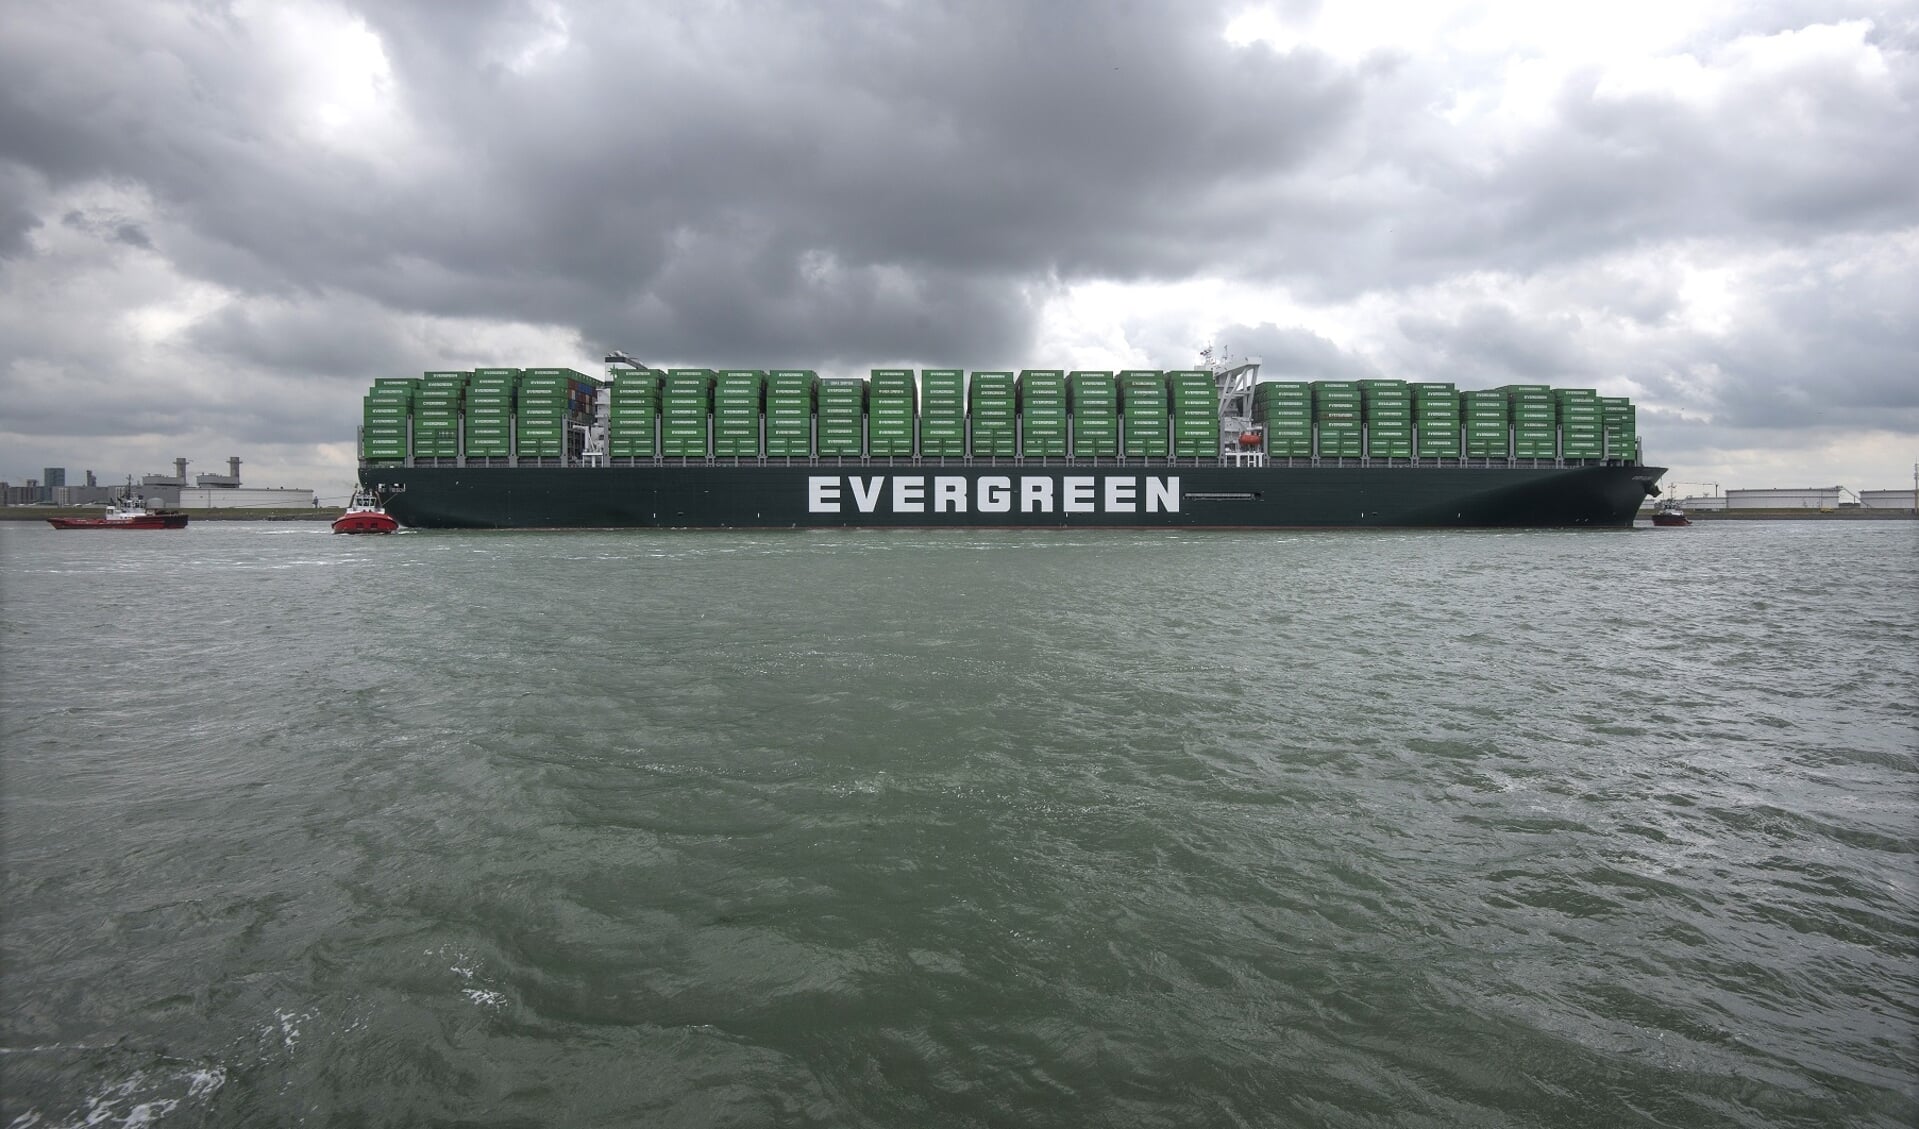 Aankomst van  de Ever Glory van Evergreen bij de Delta Zuid terminal aan de Amazonehaven te Rotterdam. Omdat het gaat om een maidentrip en het eerste 20.000 TEU containerschip van de rederij dat bovendien is uitgerust met scrubbers, is het vaartuig helemaal gestuwd met groene Evergreen containers